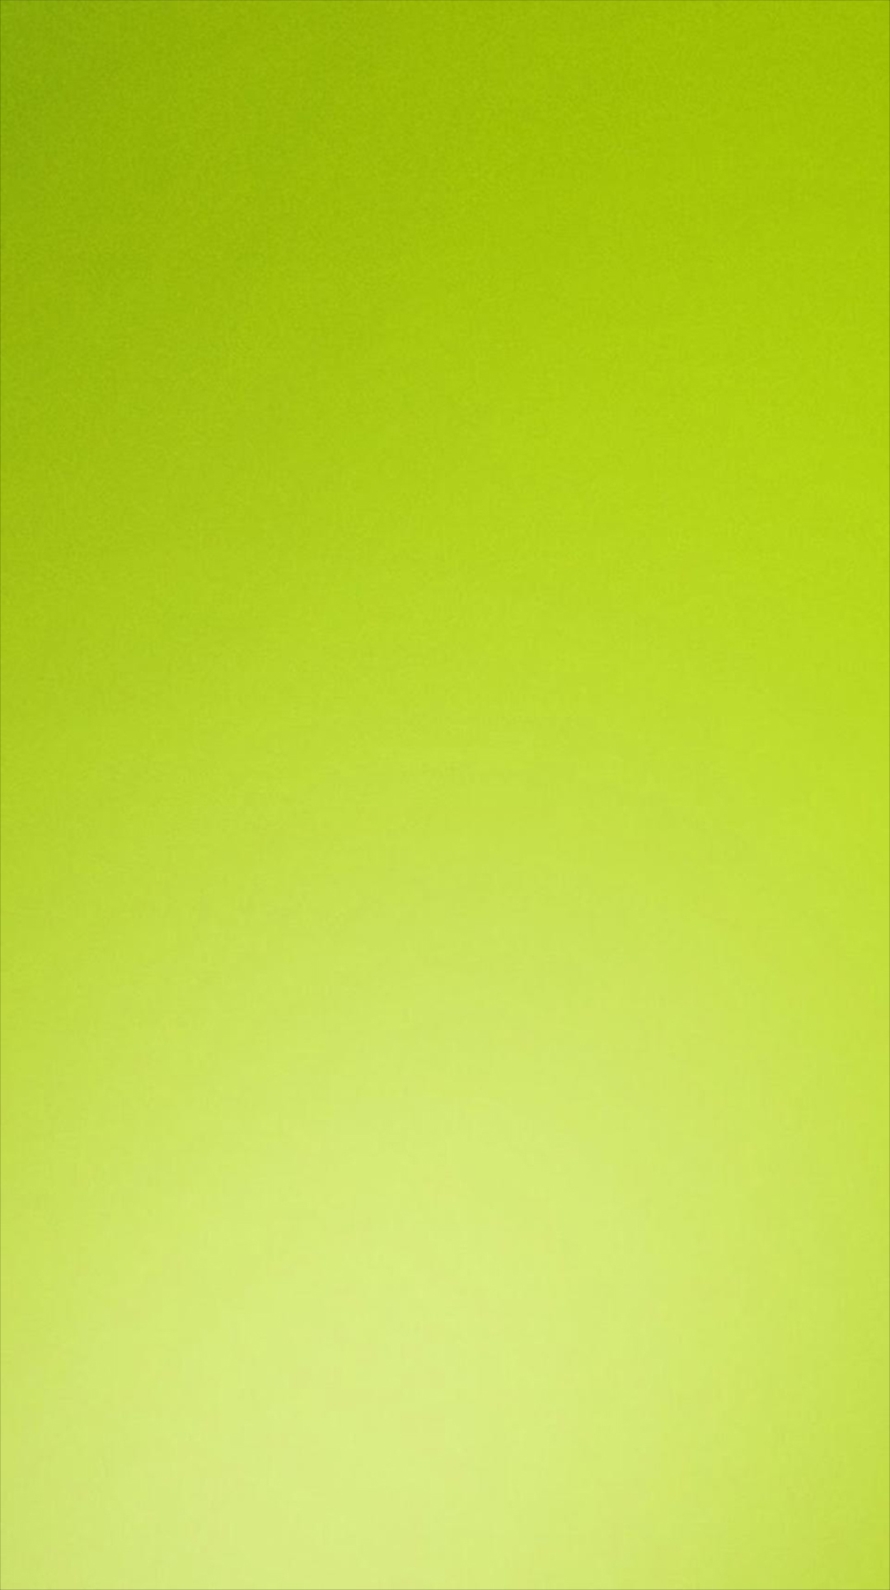 綺麗な黄緑のグラデーション Iphone6壁紙 Wallpaperbox